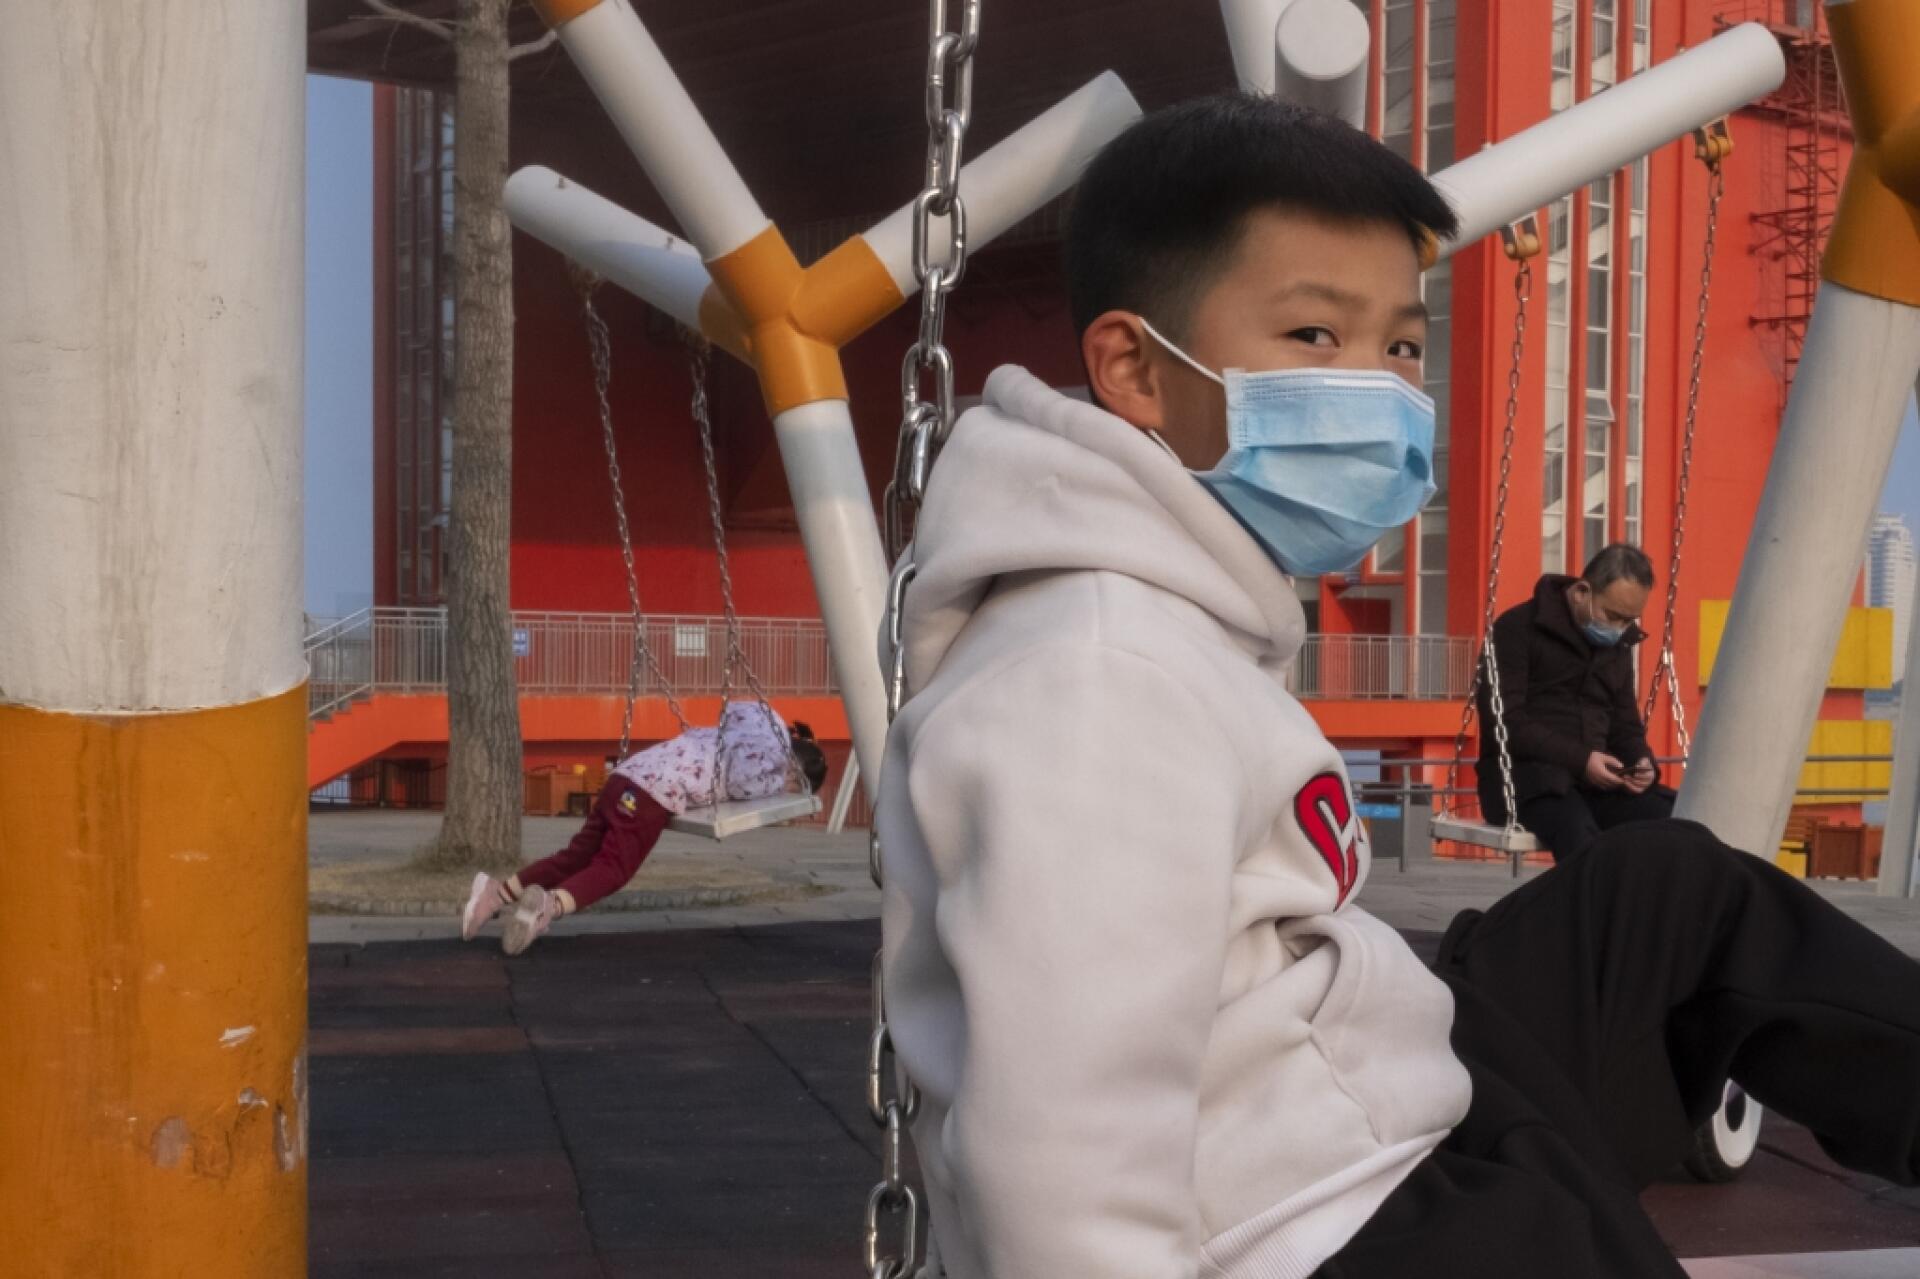 29 janvier. Avec un rayon de soleil, la vie peut sembler normale à Wuhan. La construction en un temps record de nouveaux hôpitaux pour prendre en charge des victimes du coronavirus a été annoncée mais les gens se sentent vulnérables et la tension reste palpable au quotidien.